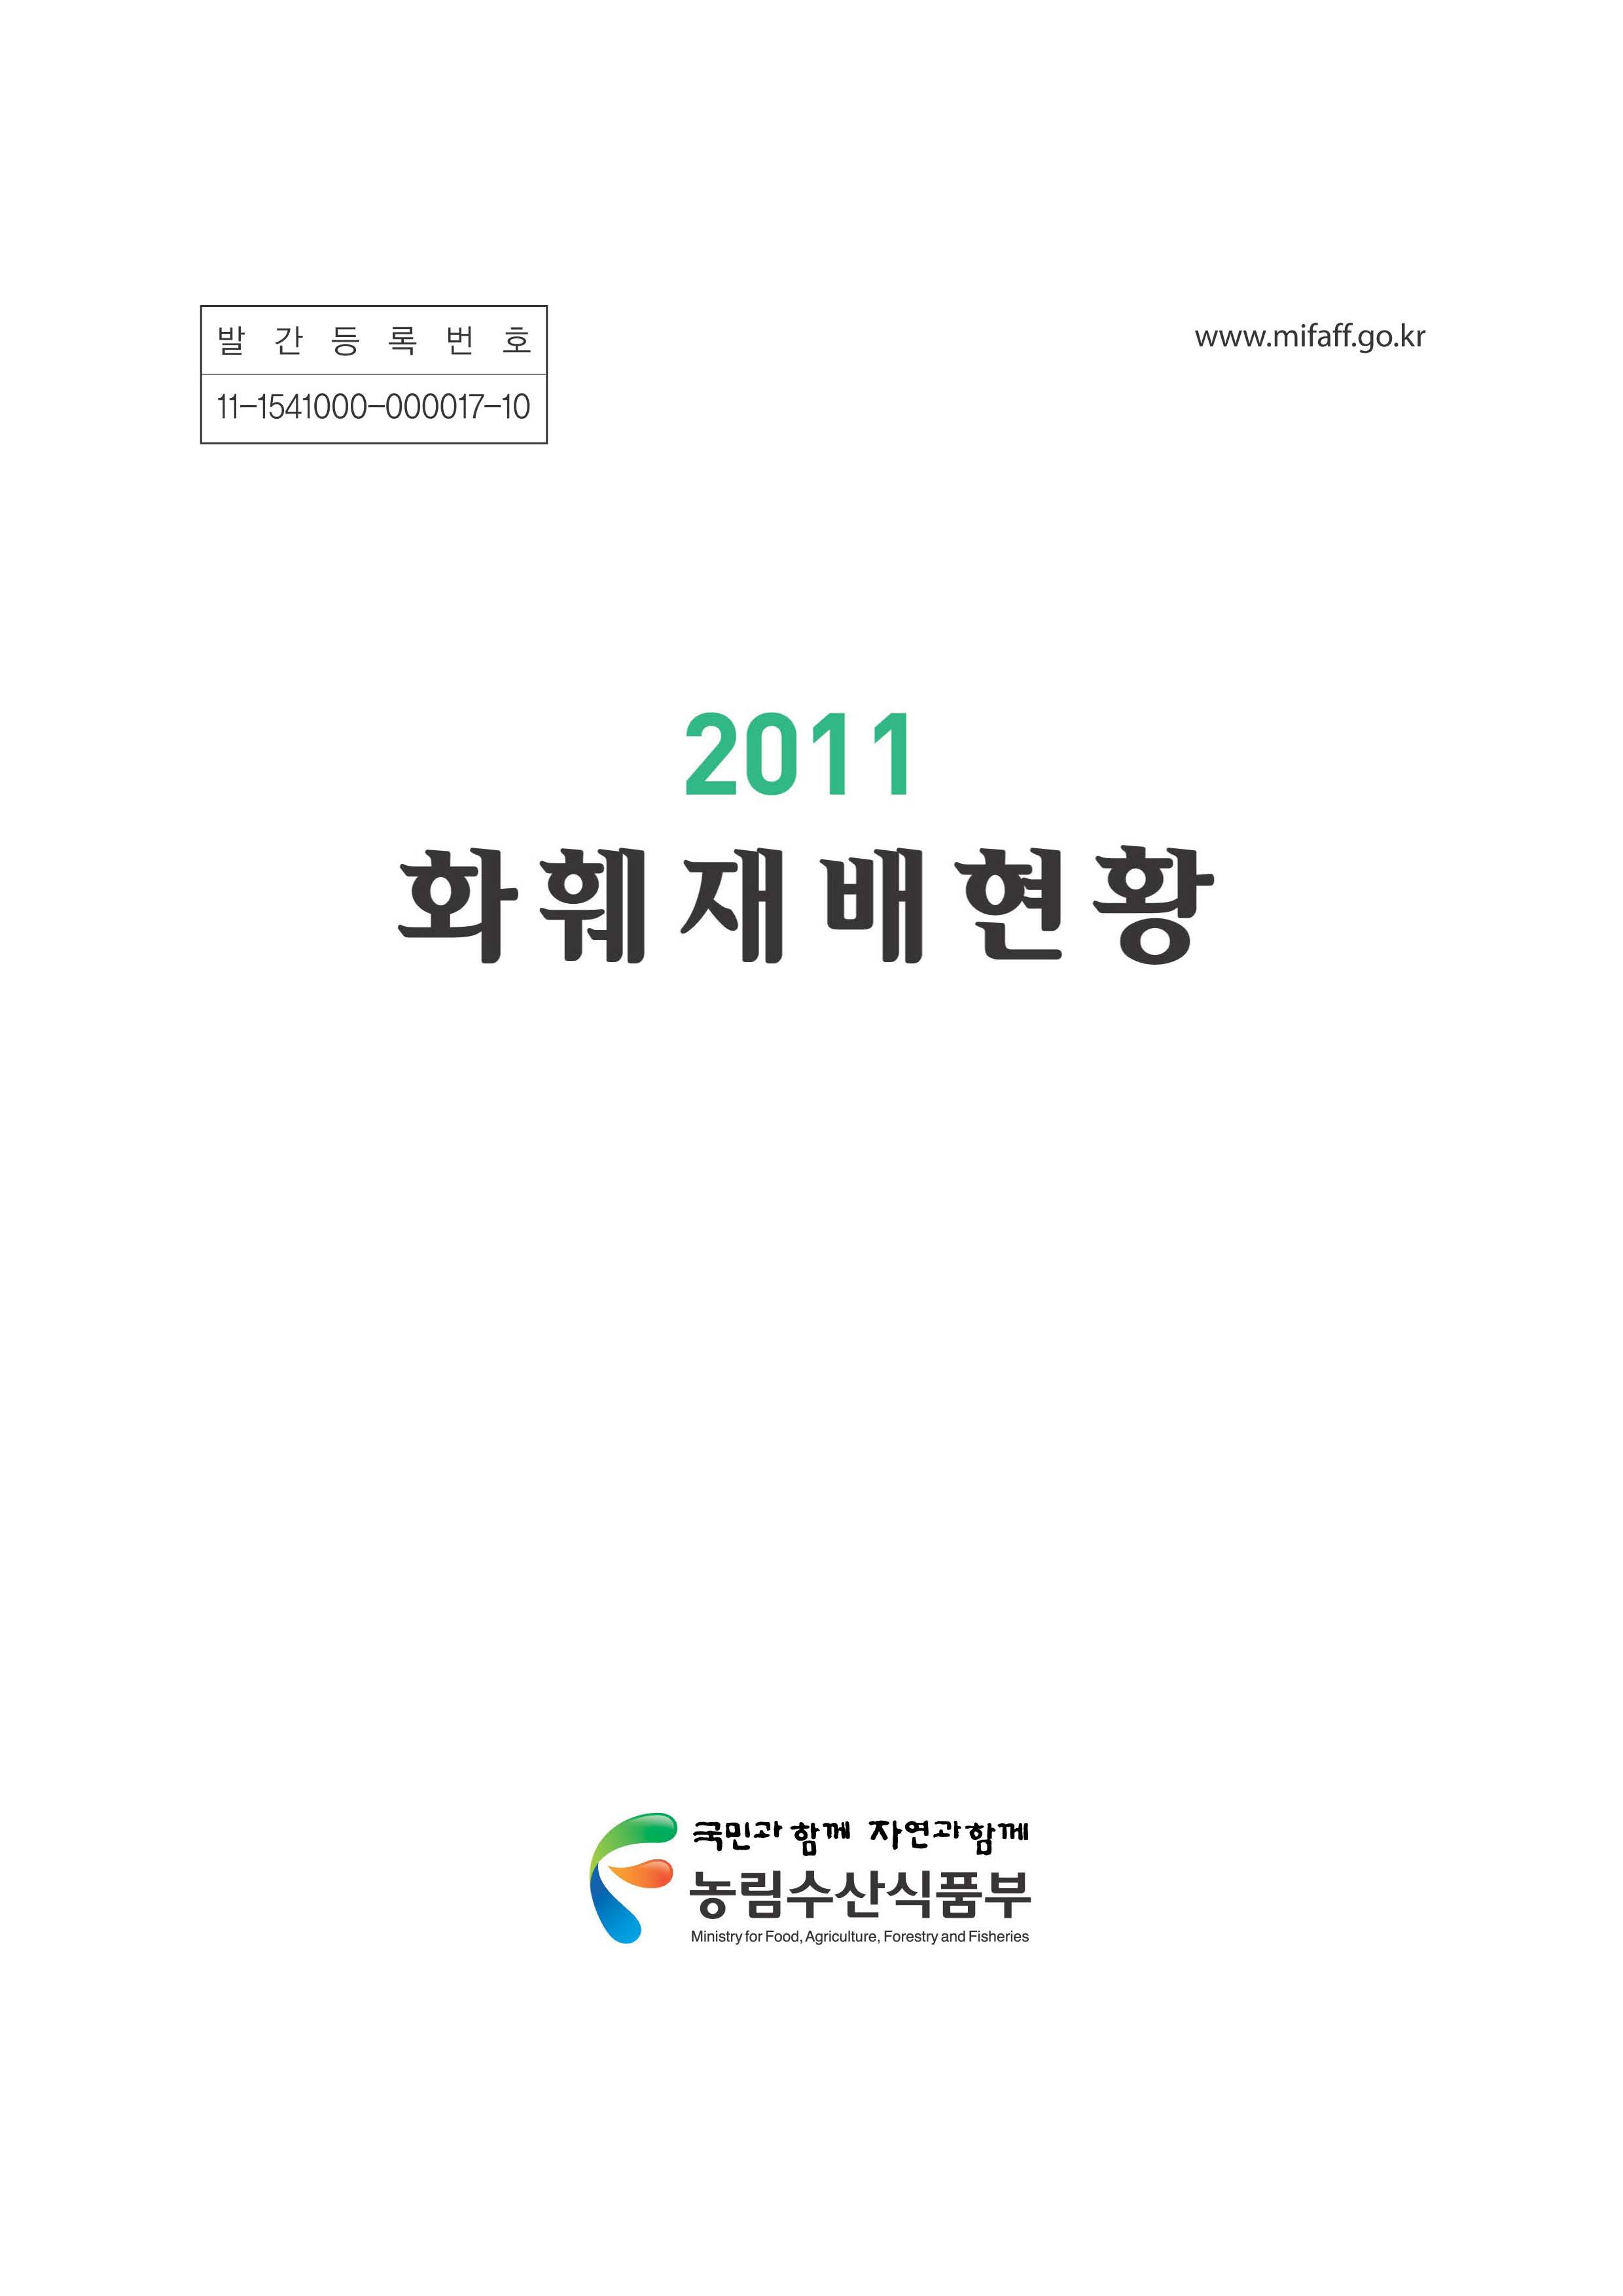 화훼재배현황. 2011